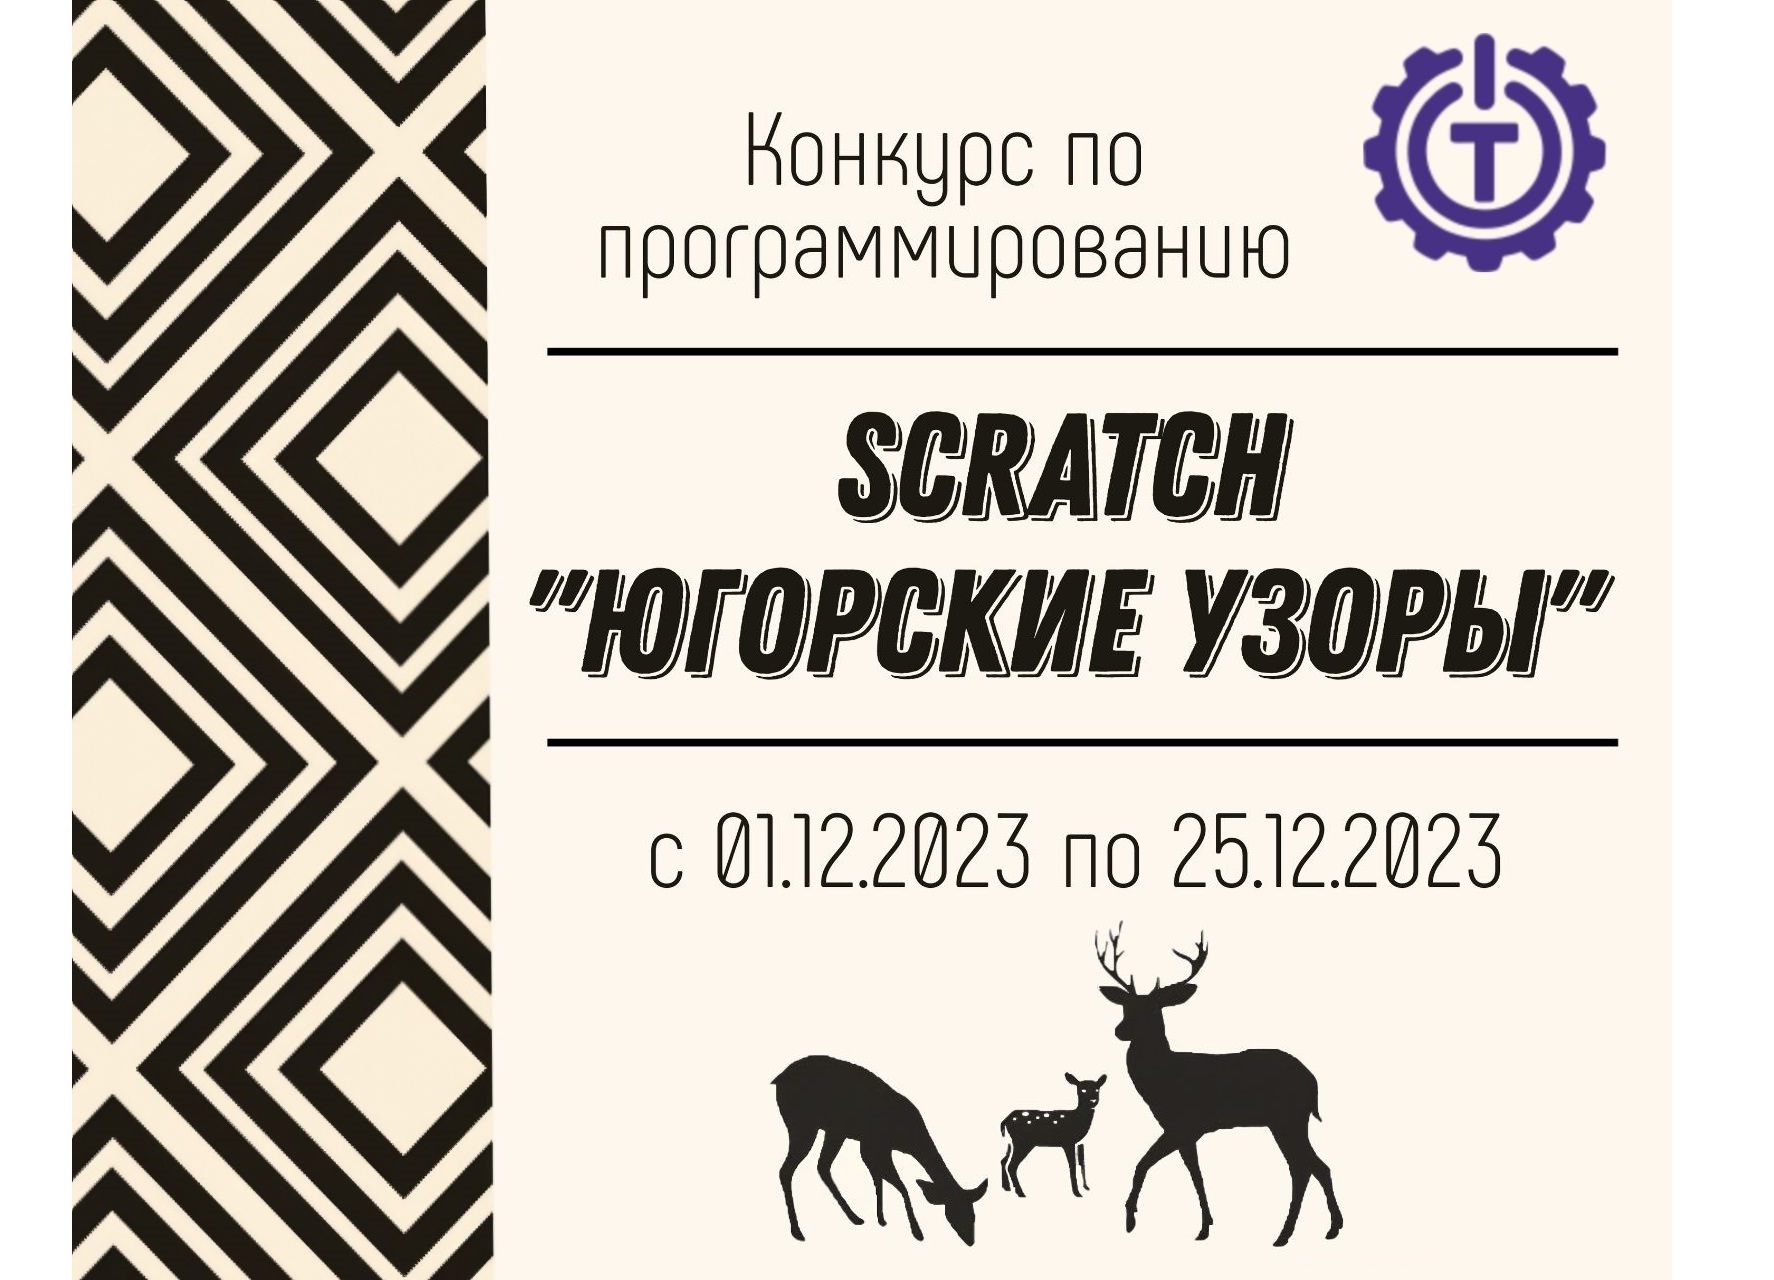 Дистанционный конкурс по программированию в среде Scratch «Югорские узоры».